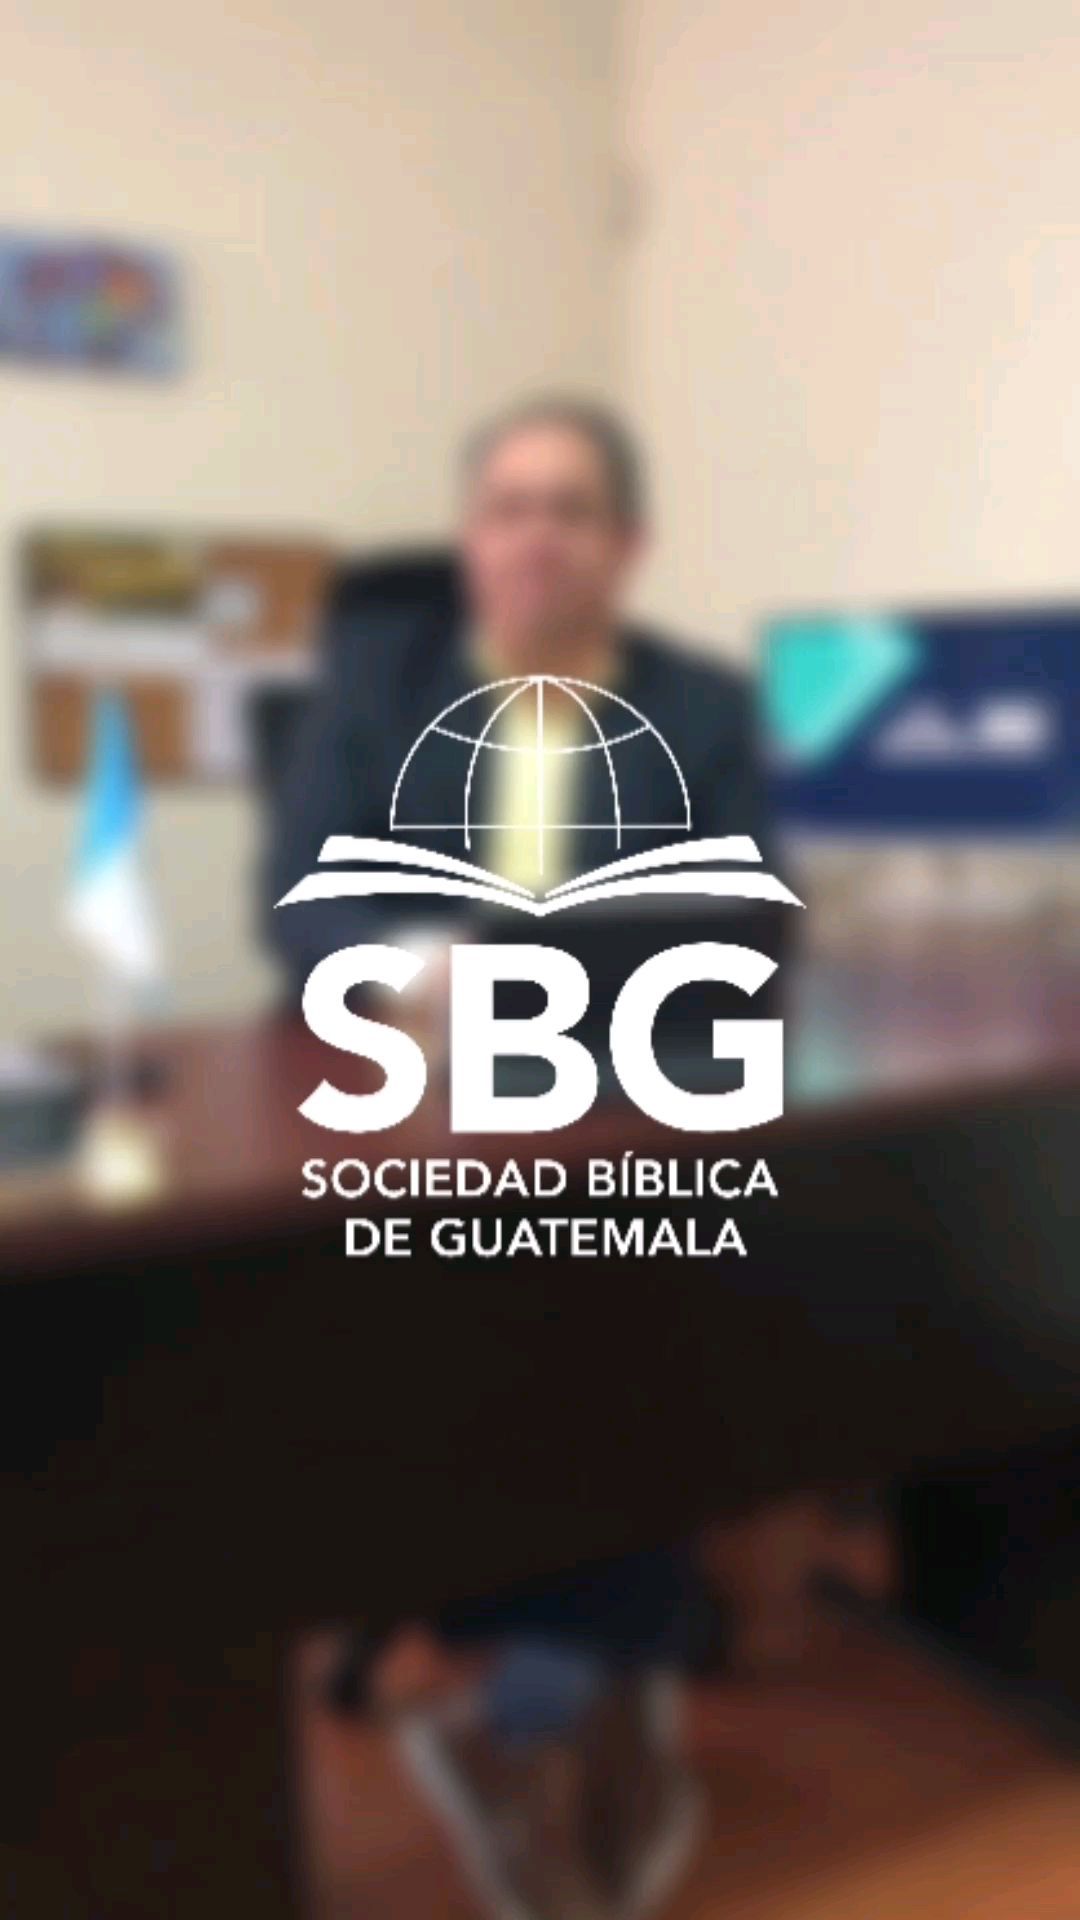 Conoce la historia que envuelve al Libro de los libros. 
Hoy 22 de julio a las 9:00 de la mañana por Facebook live.

#museo #biblia #virtual #sbg #guatemala